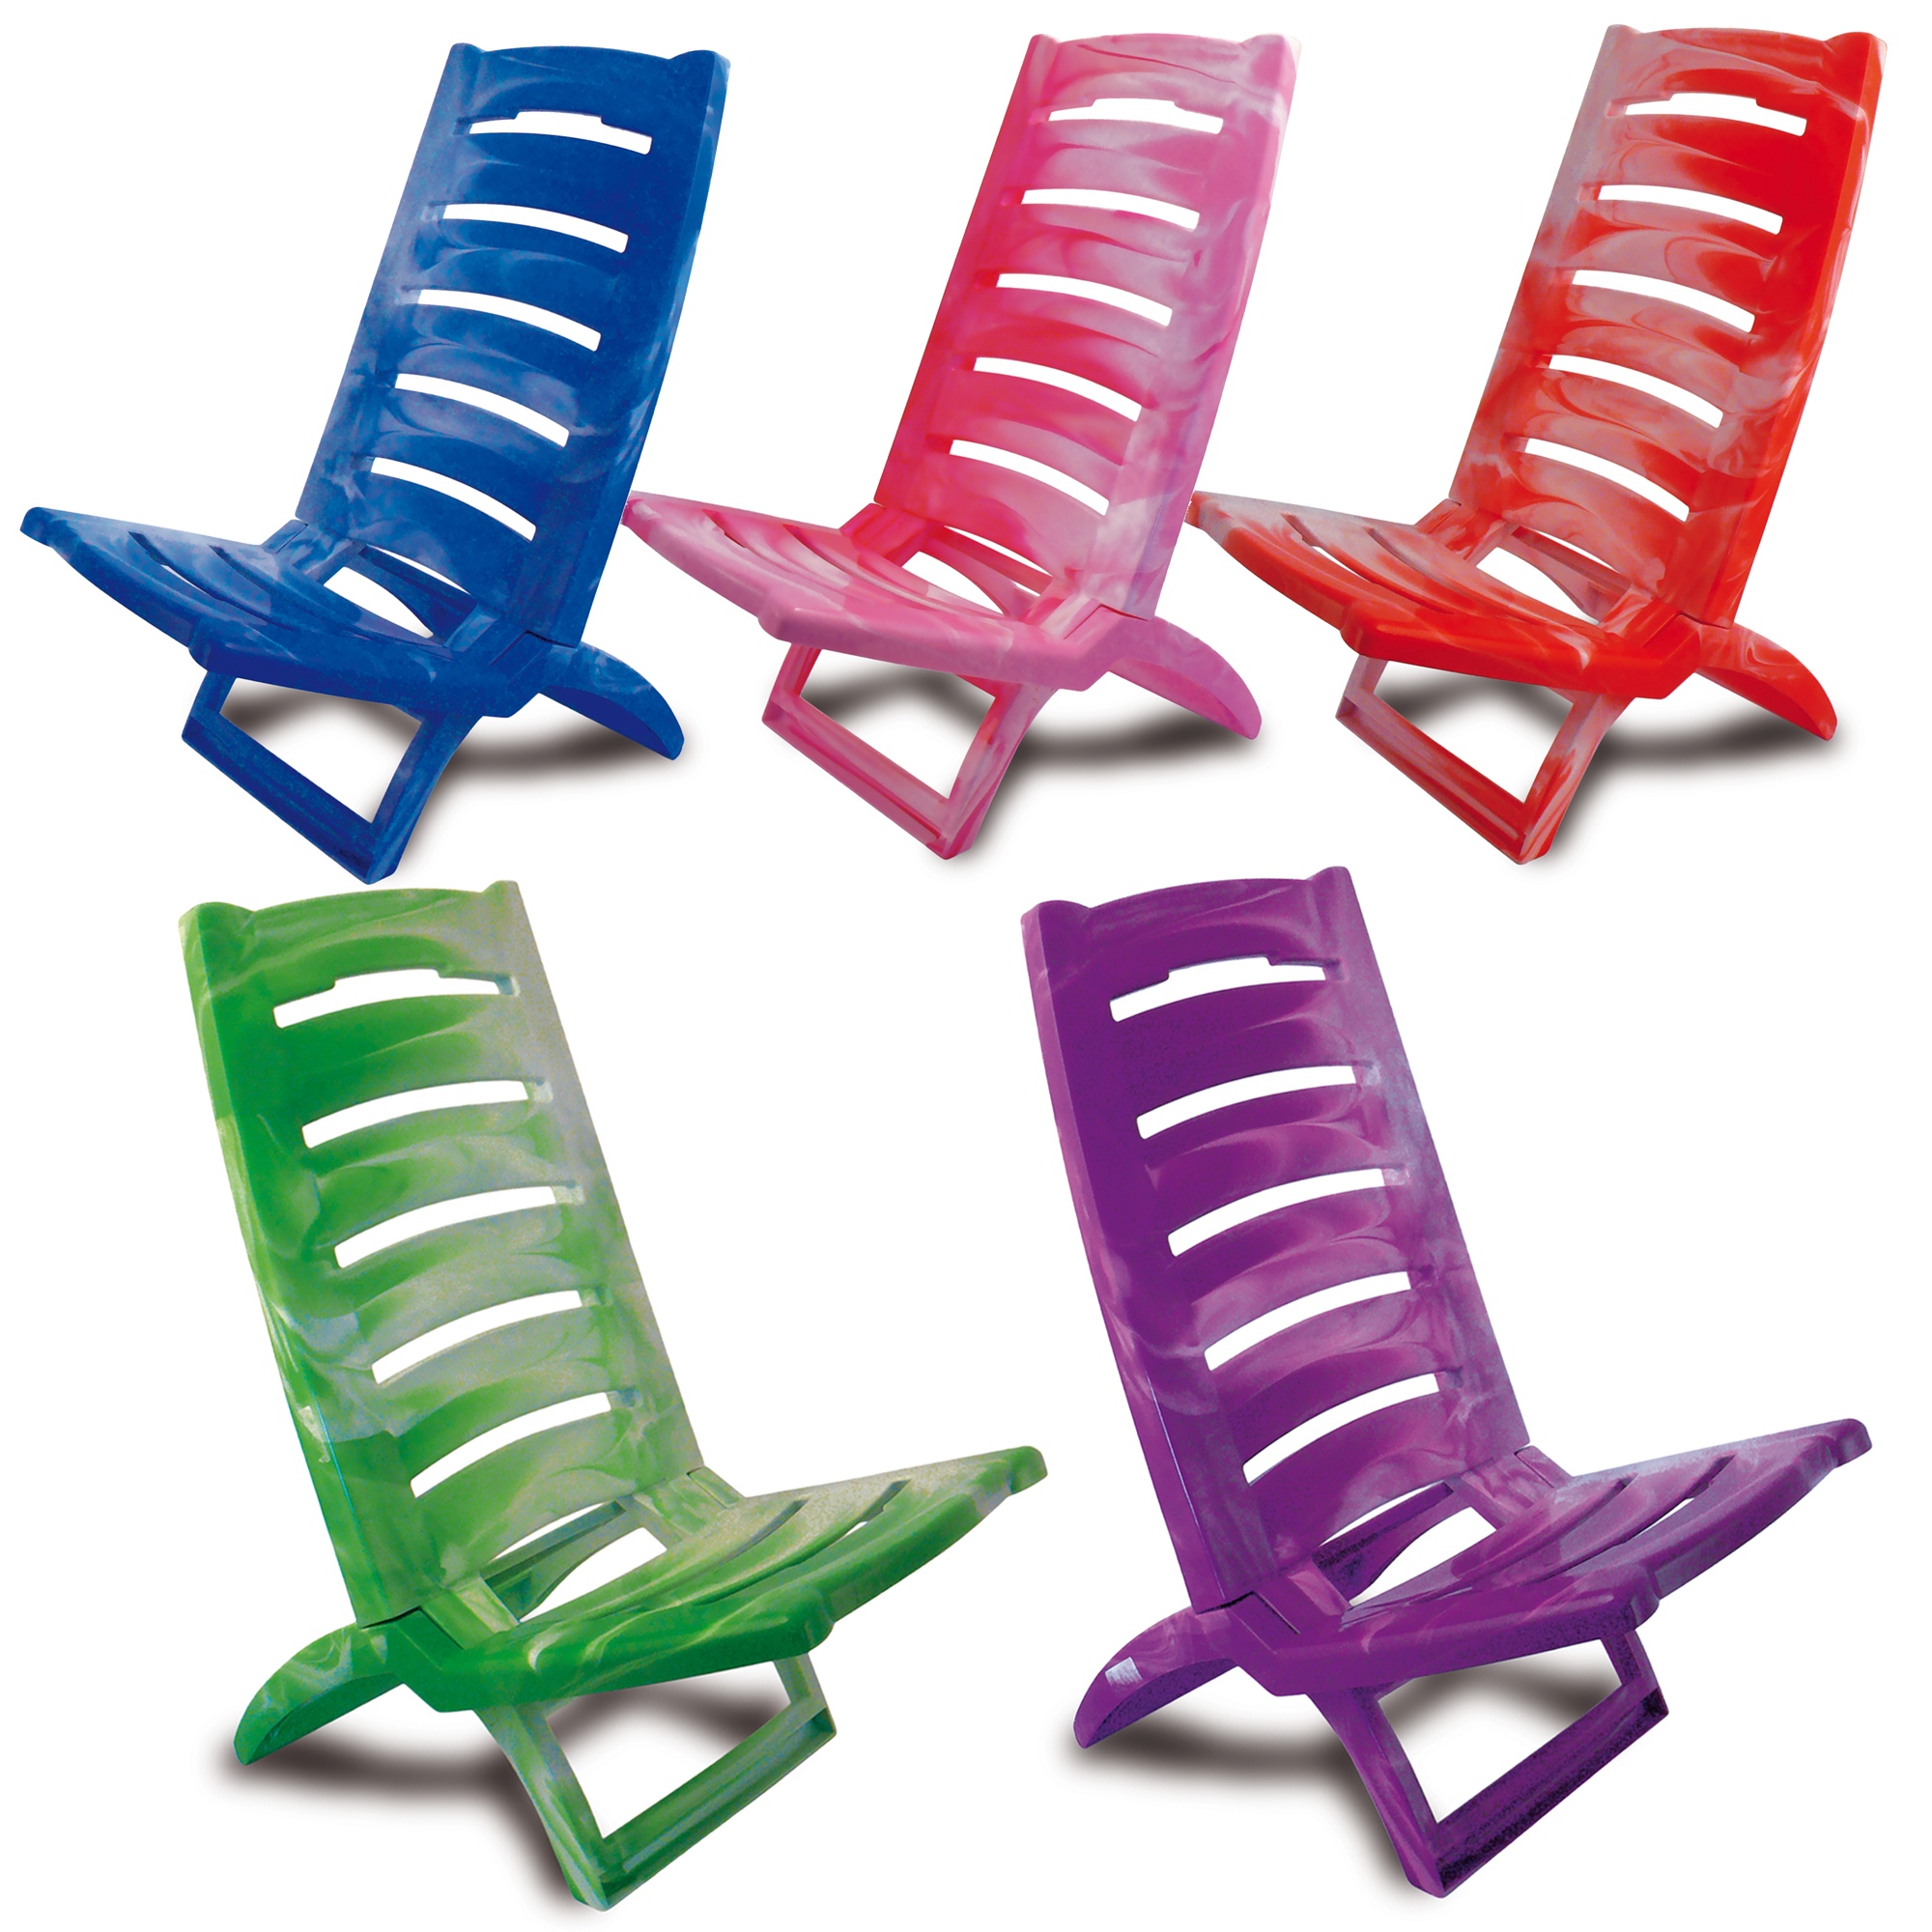 Tri Fold Beach Chair Plastic annianddesign